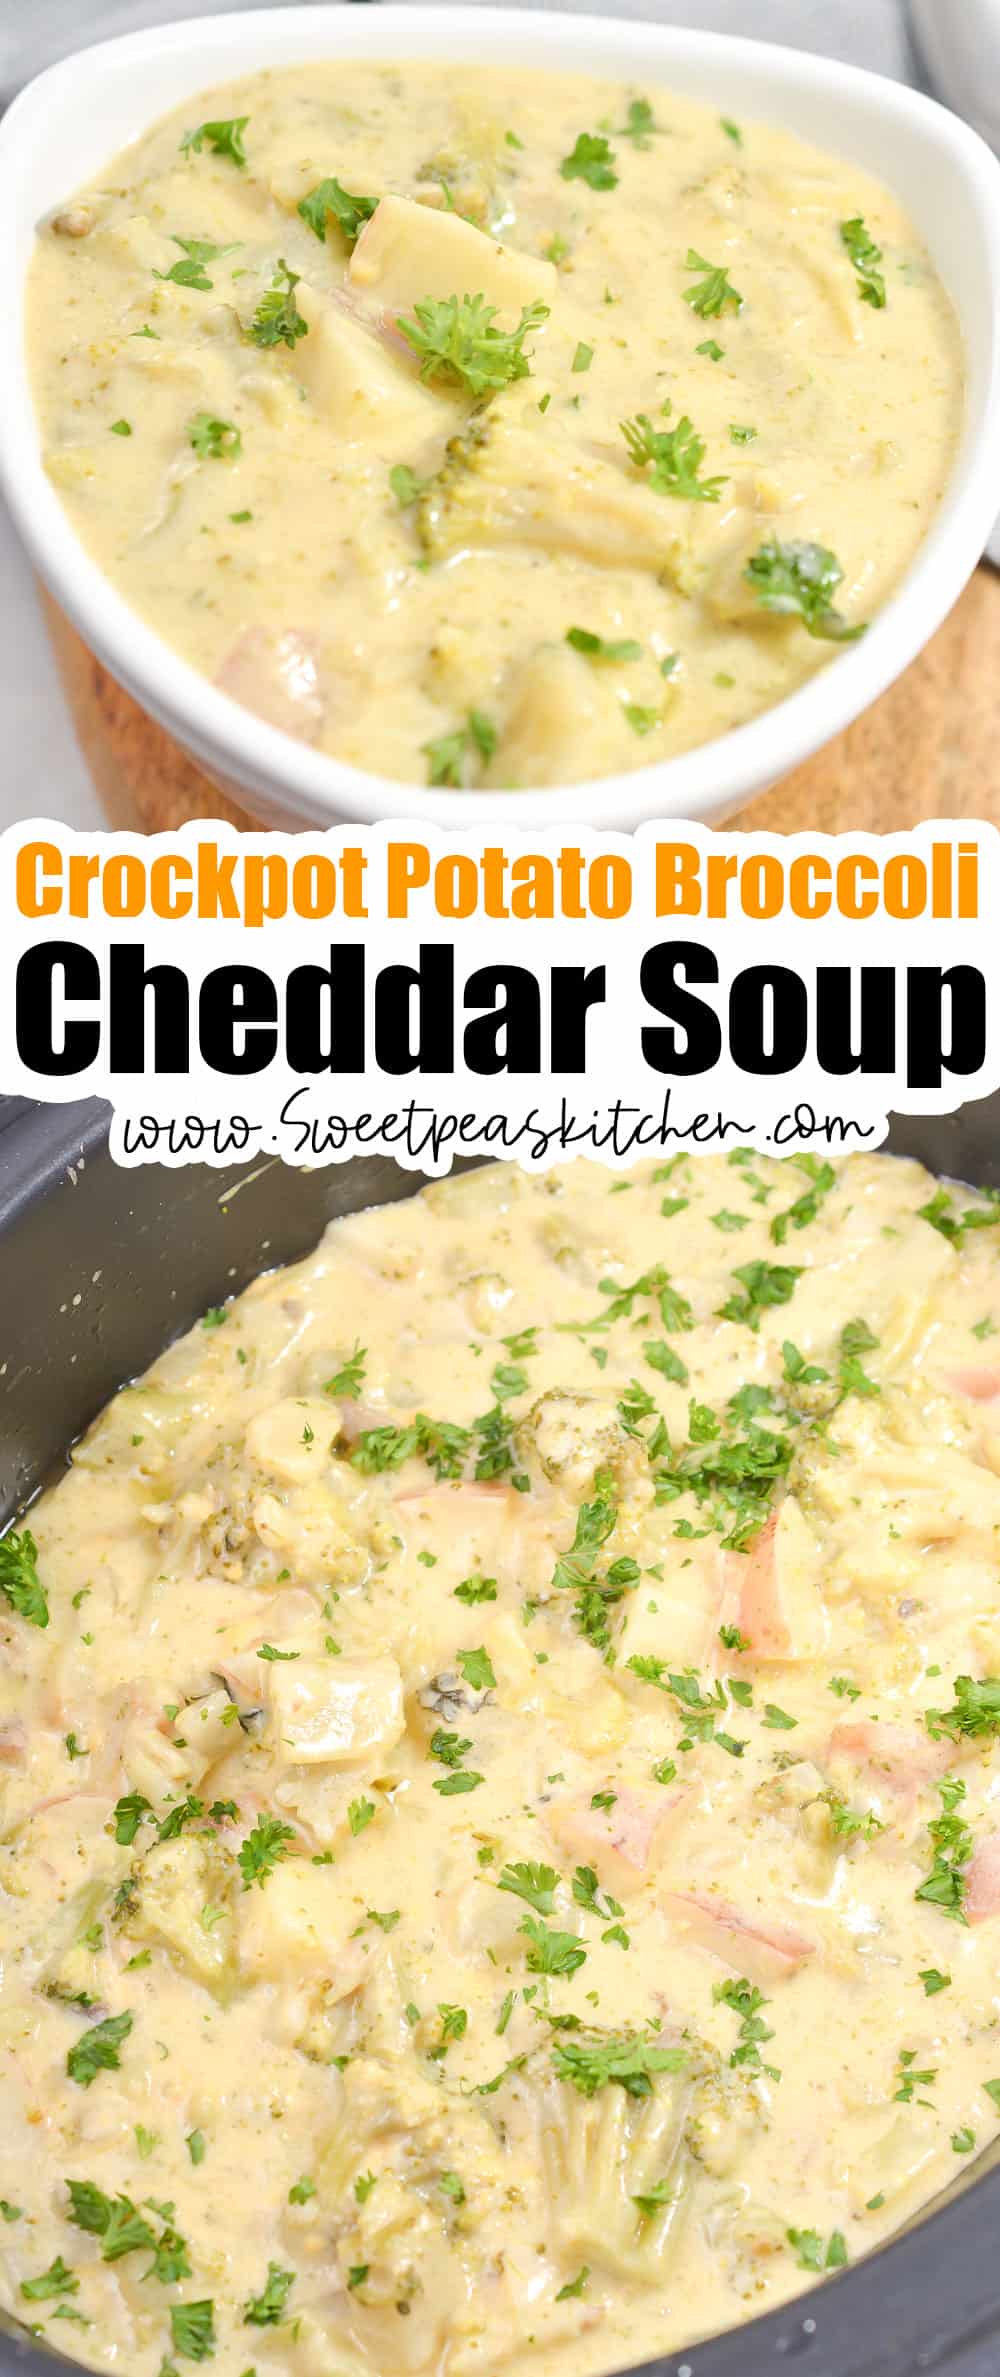 crockpot potato broccoli cheddar soup on pinterest